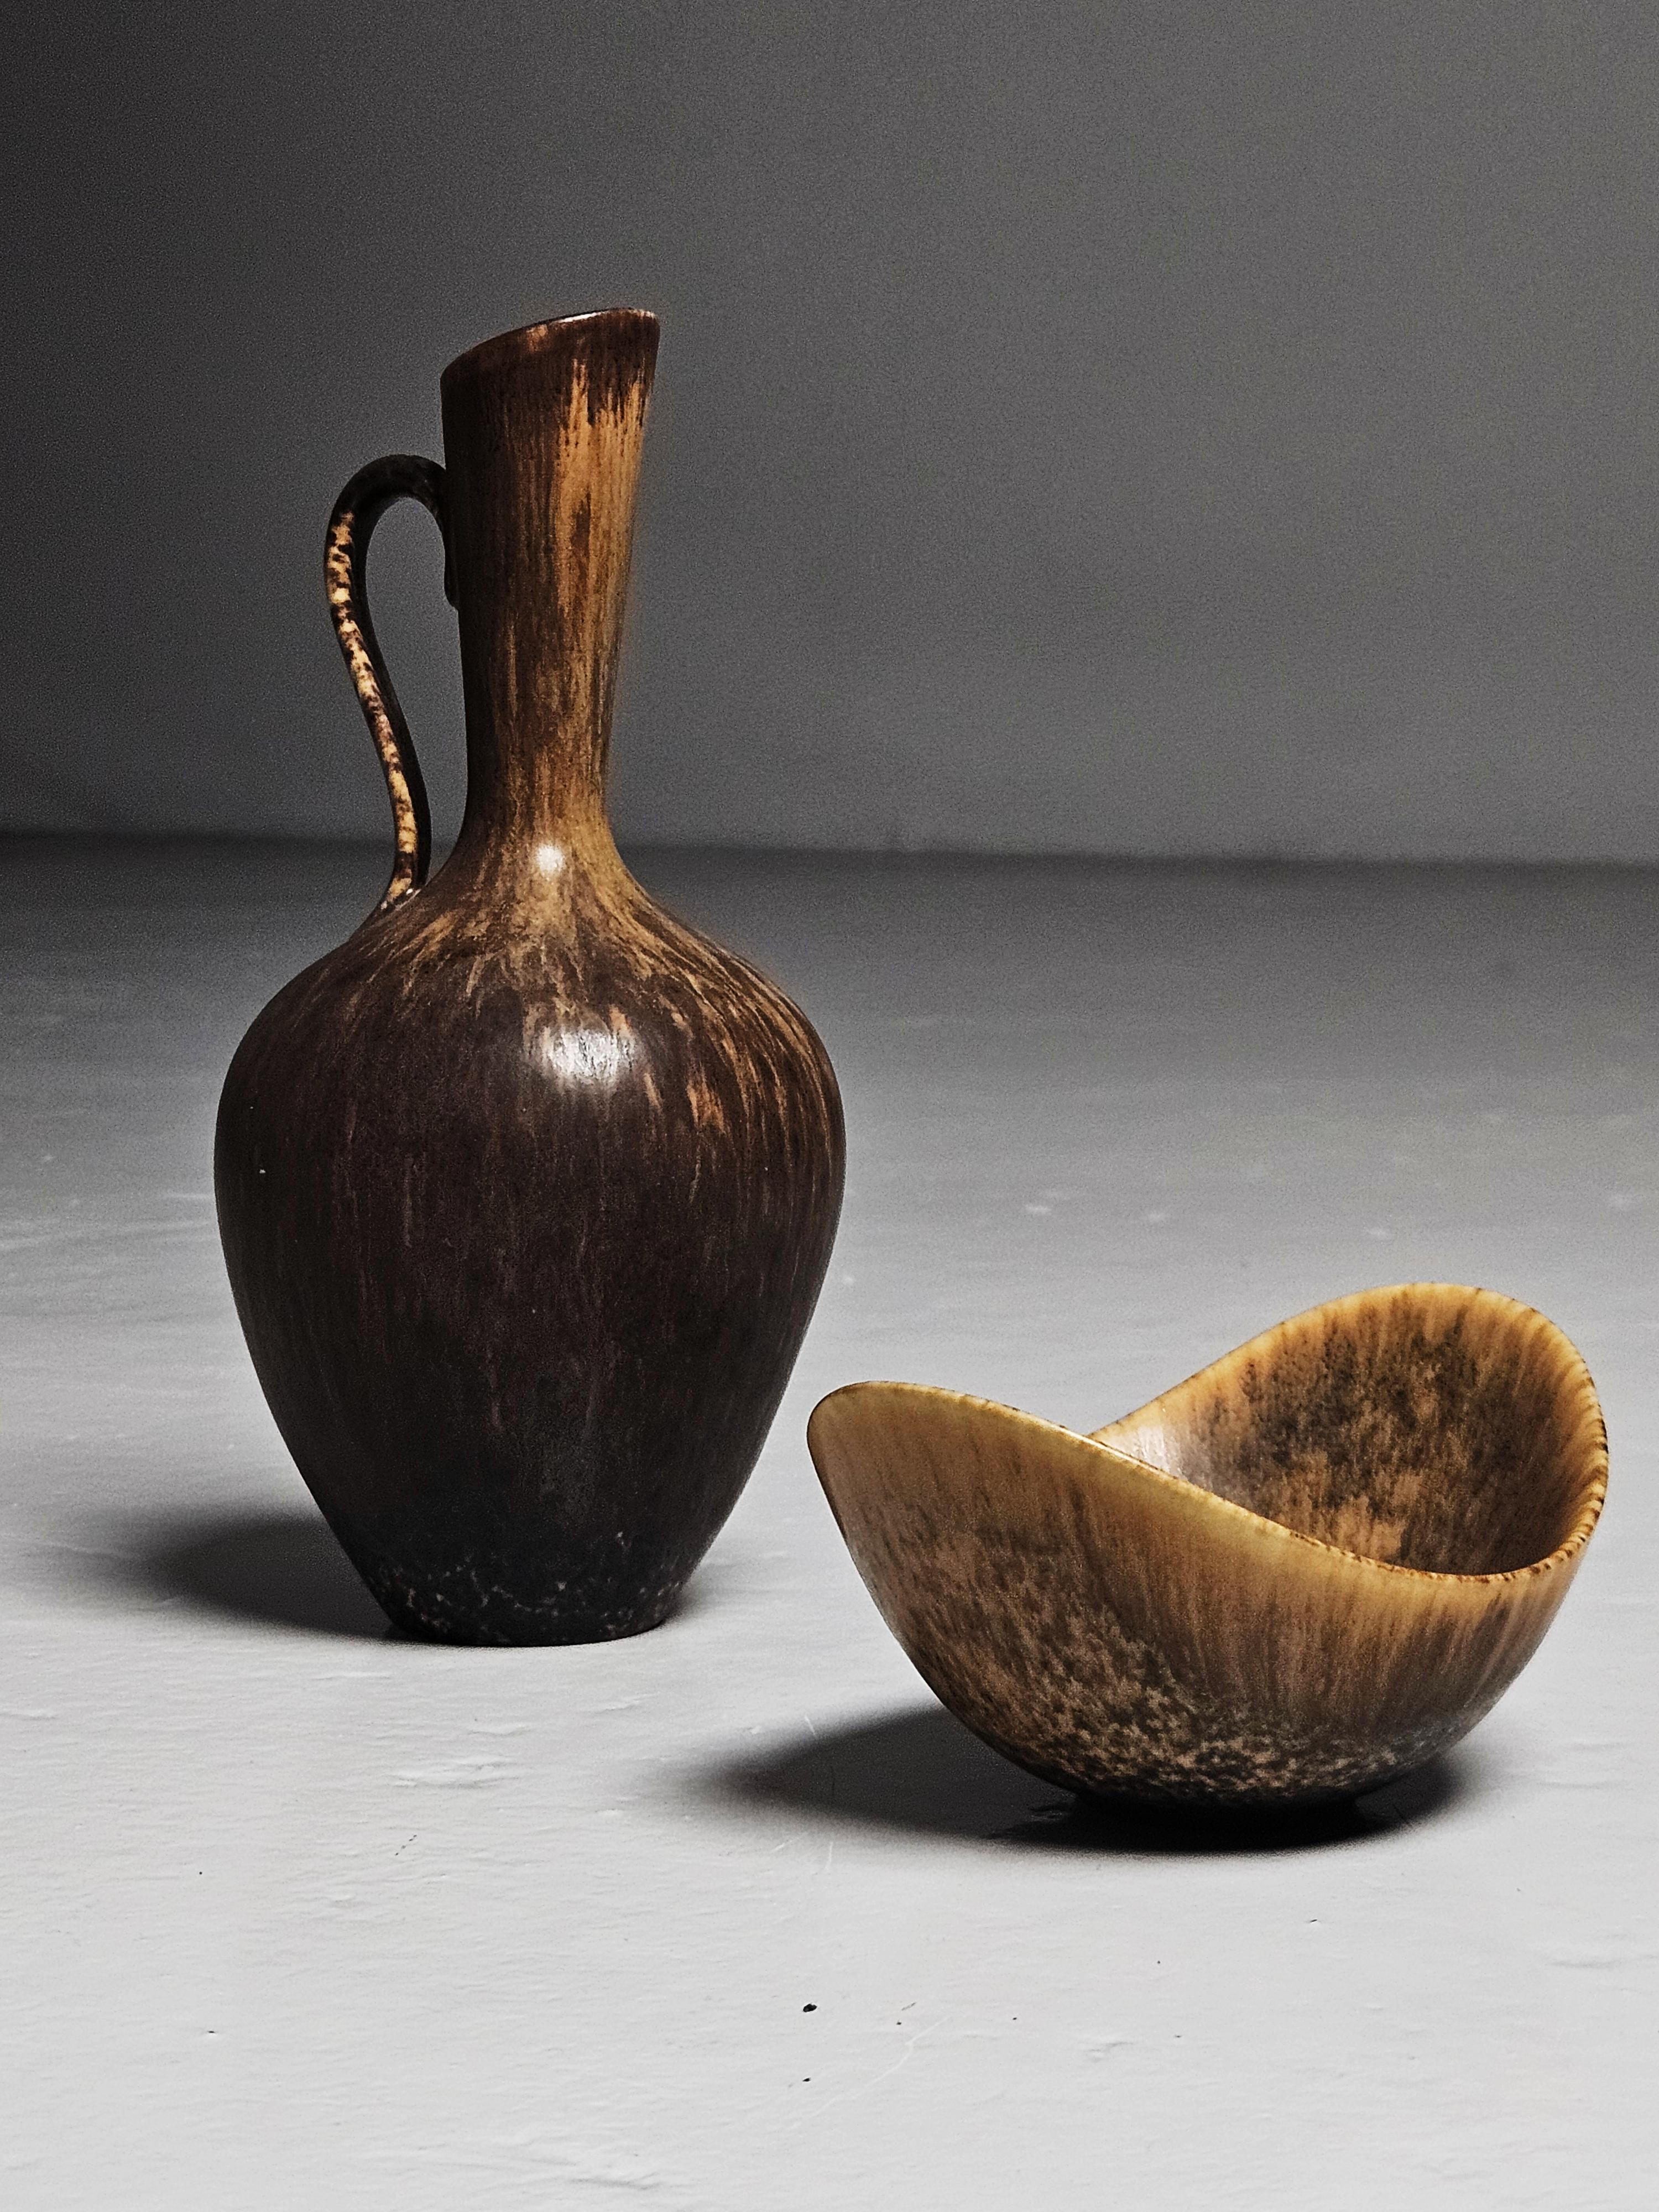 Kleine Schale und Vase, entworfen von Gunnar Nylund, hergestellt von Rörstrand, Schweden, in den 1950er Jahren. 

Beide mit schöner erdfarbener Glasur. 

Abmessungen der Schale: Höhe: 5 cm (1,97 Zoll)Breite: 7,5 cm (2,96 Zoll)Tiefe: 10 cm (3,94